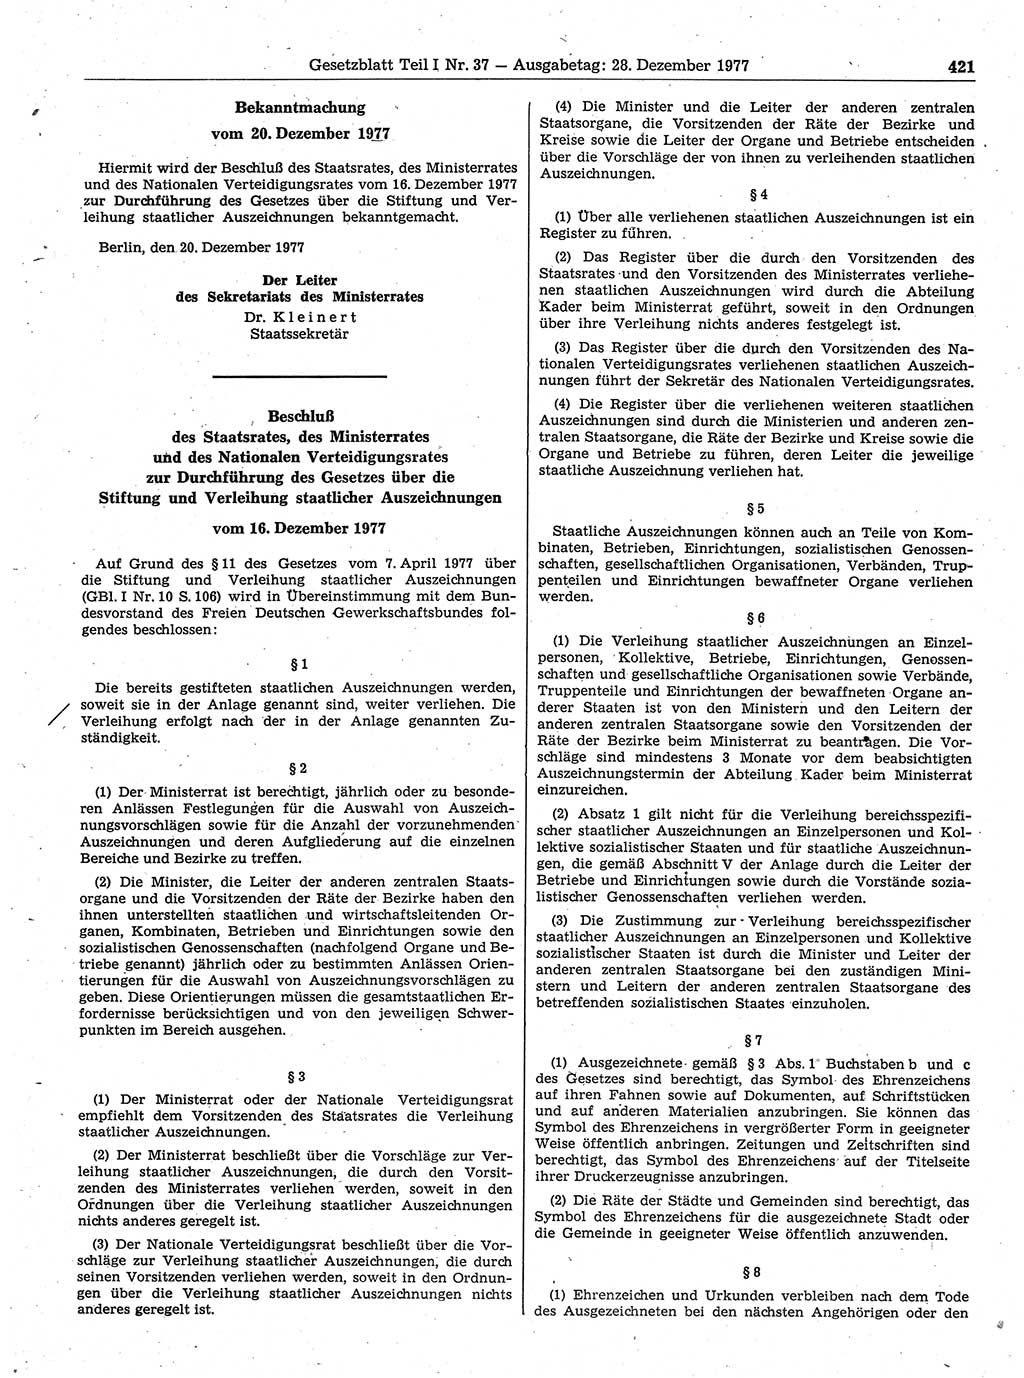 Gesetzblatt (GBl.) der Deutschen Demokratischen Republik (DDR) Teil Ⅰ 1977, Seite 421 (GBl. DDR Ⅰ 1977, S. 421)